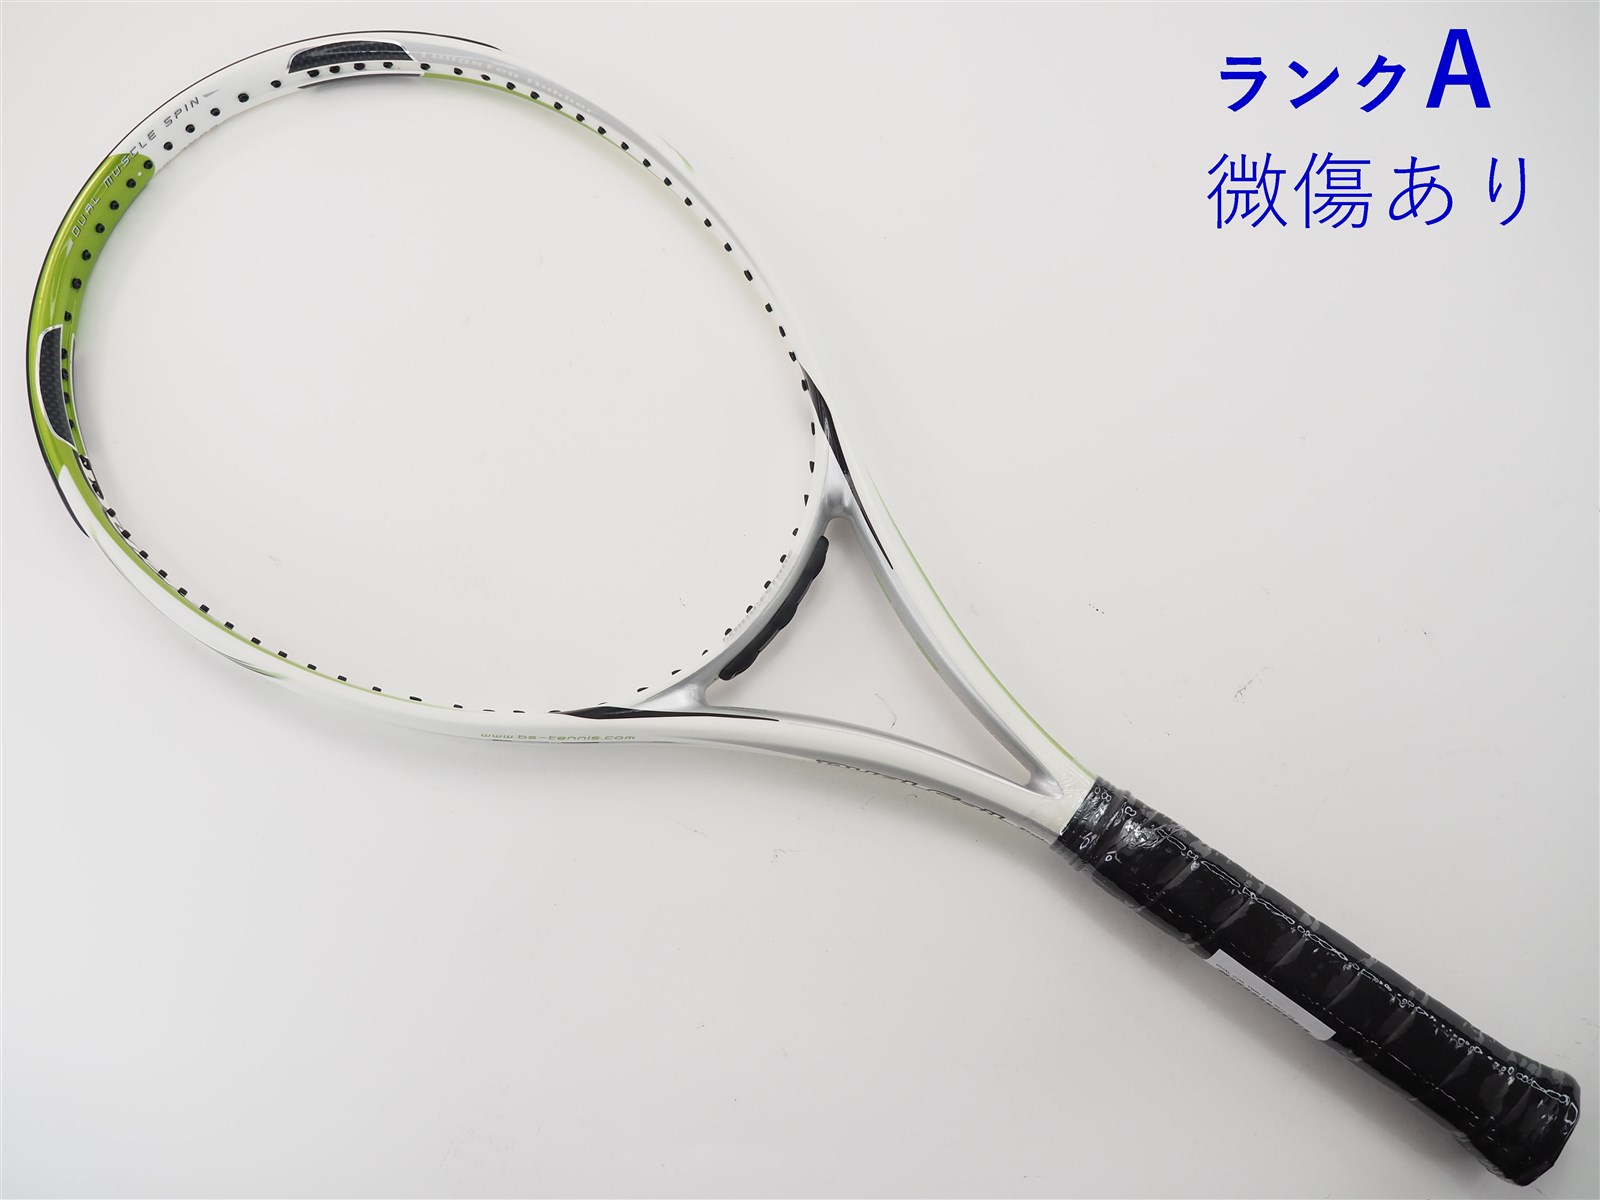 ブリヂストン テニスラケット ブリヂストン デュアルコイル ツイン2.65 2010年モデル (G2)BRIDGESTONE DUAL COIL TWIN 2.65 2010